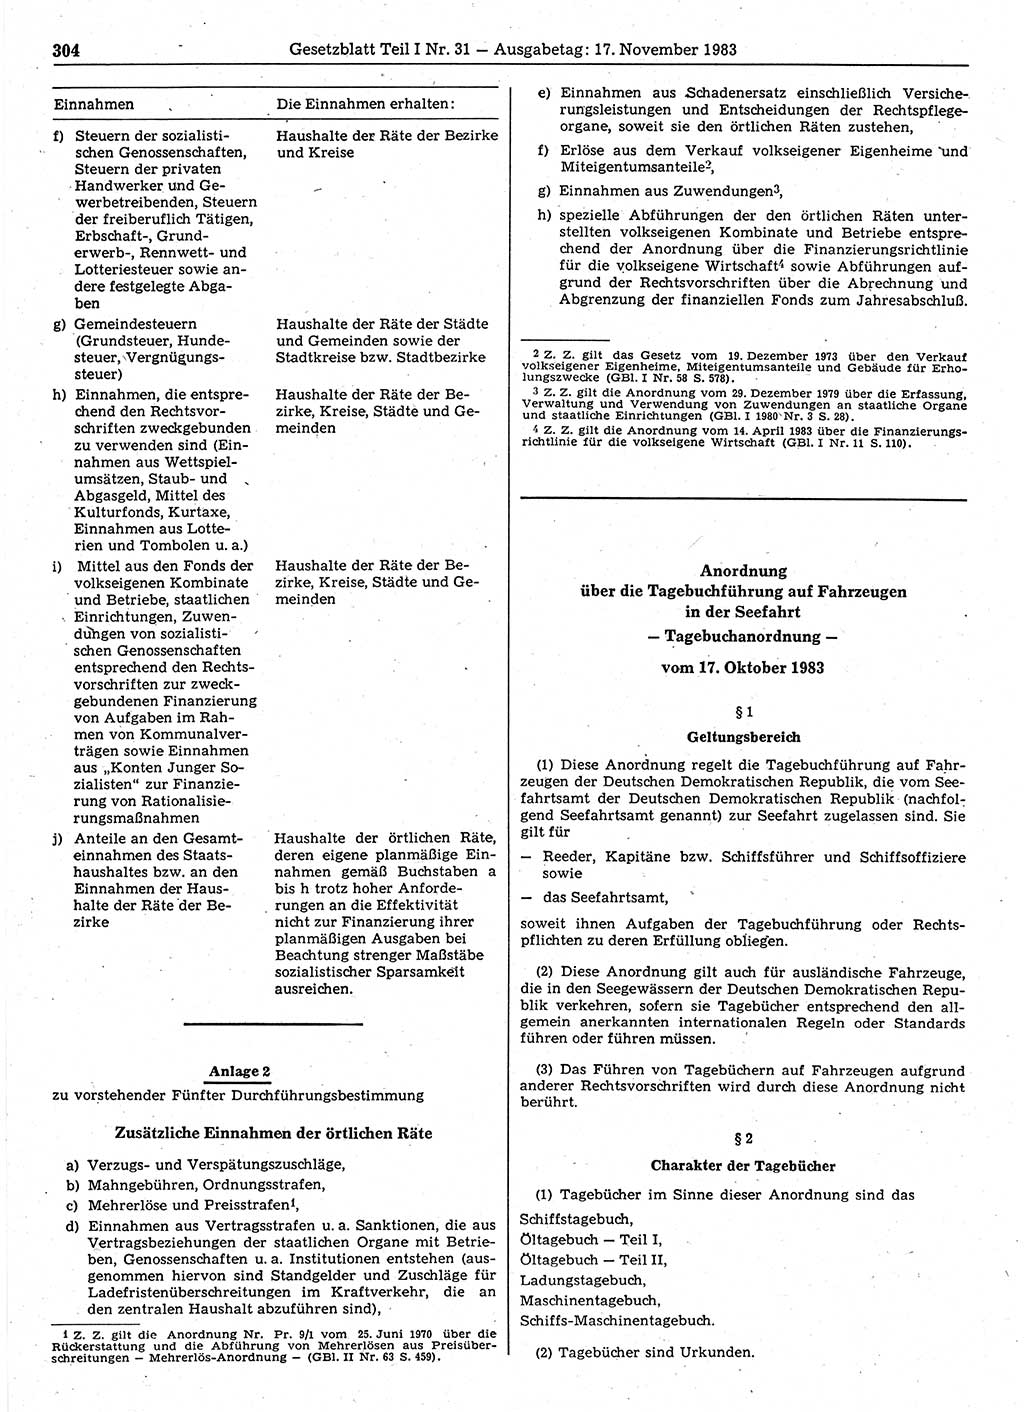 Gesetzblatt (GBl.) der Deutschen Demokratischen Republik (DDR) Teil Ⅰ 1983, Seite 304 (GBl. DDR Ⅰ 1983, S. 304)